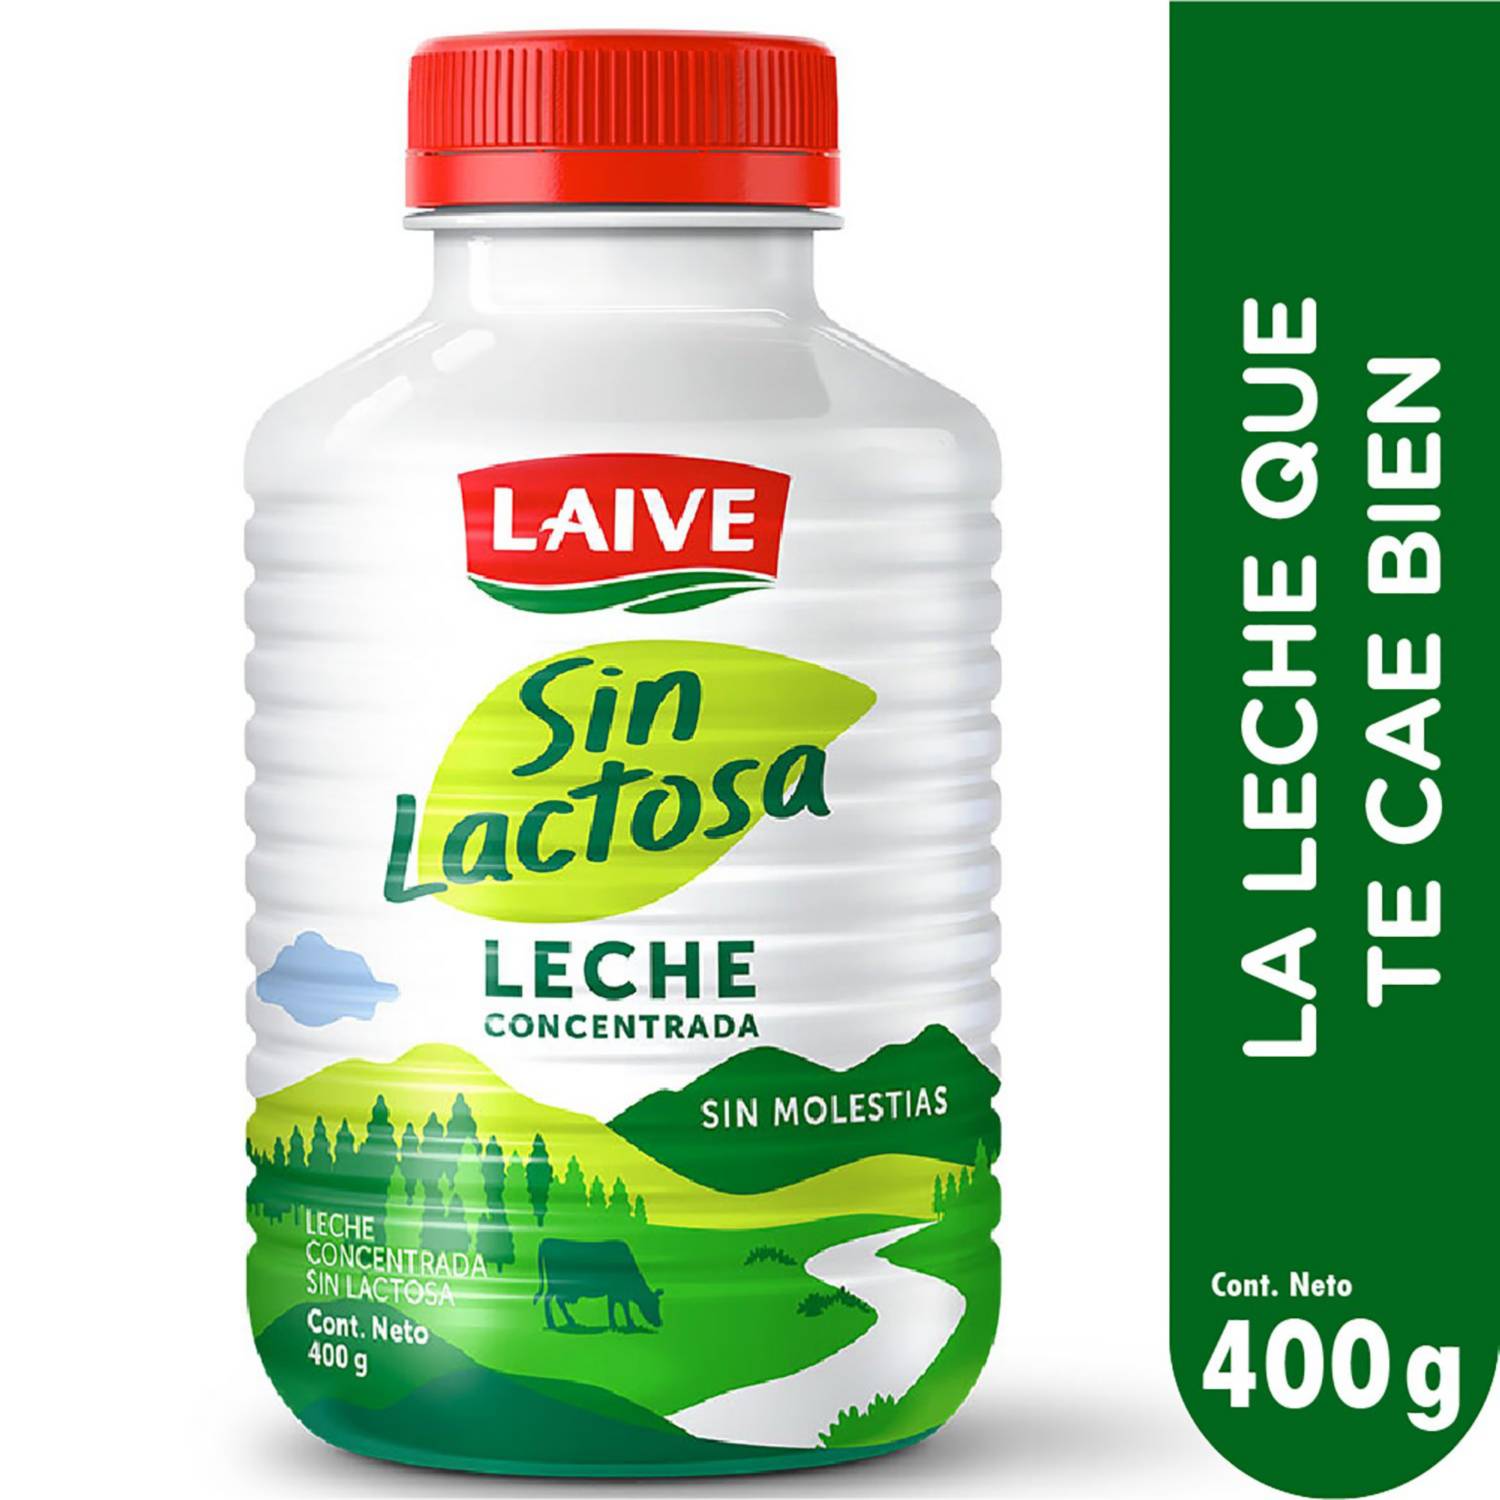 Leche Laive concentrada sin lactosa de 400 g